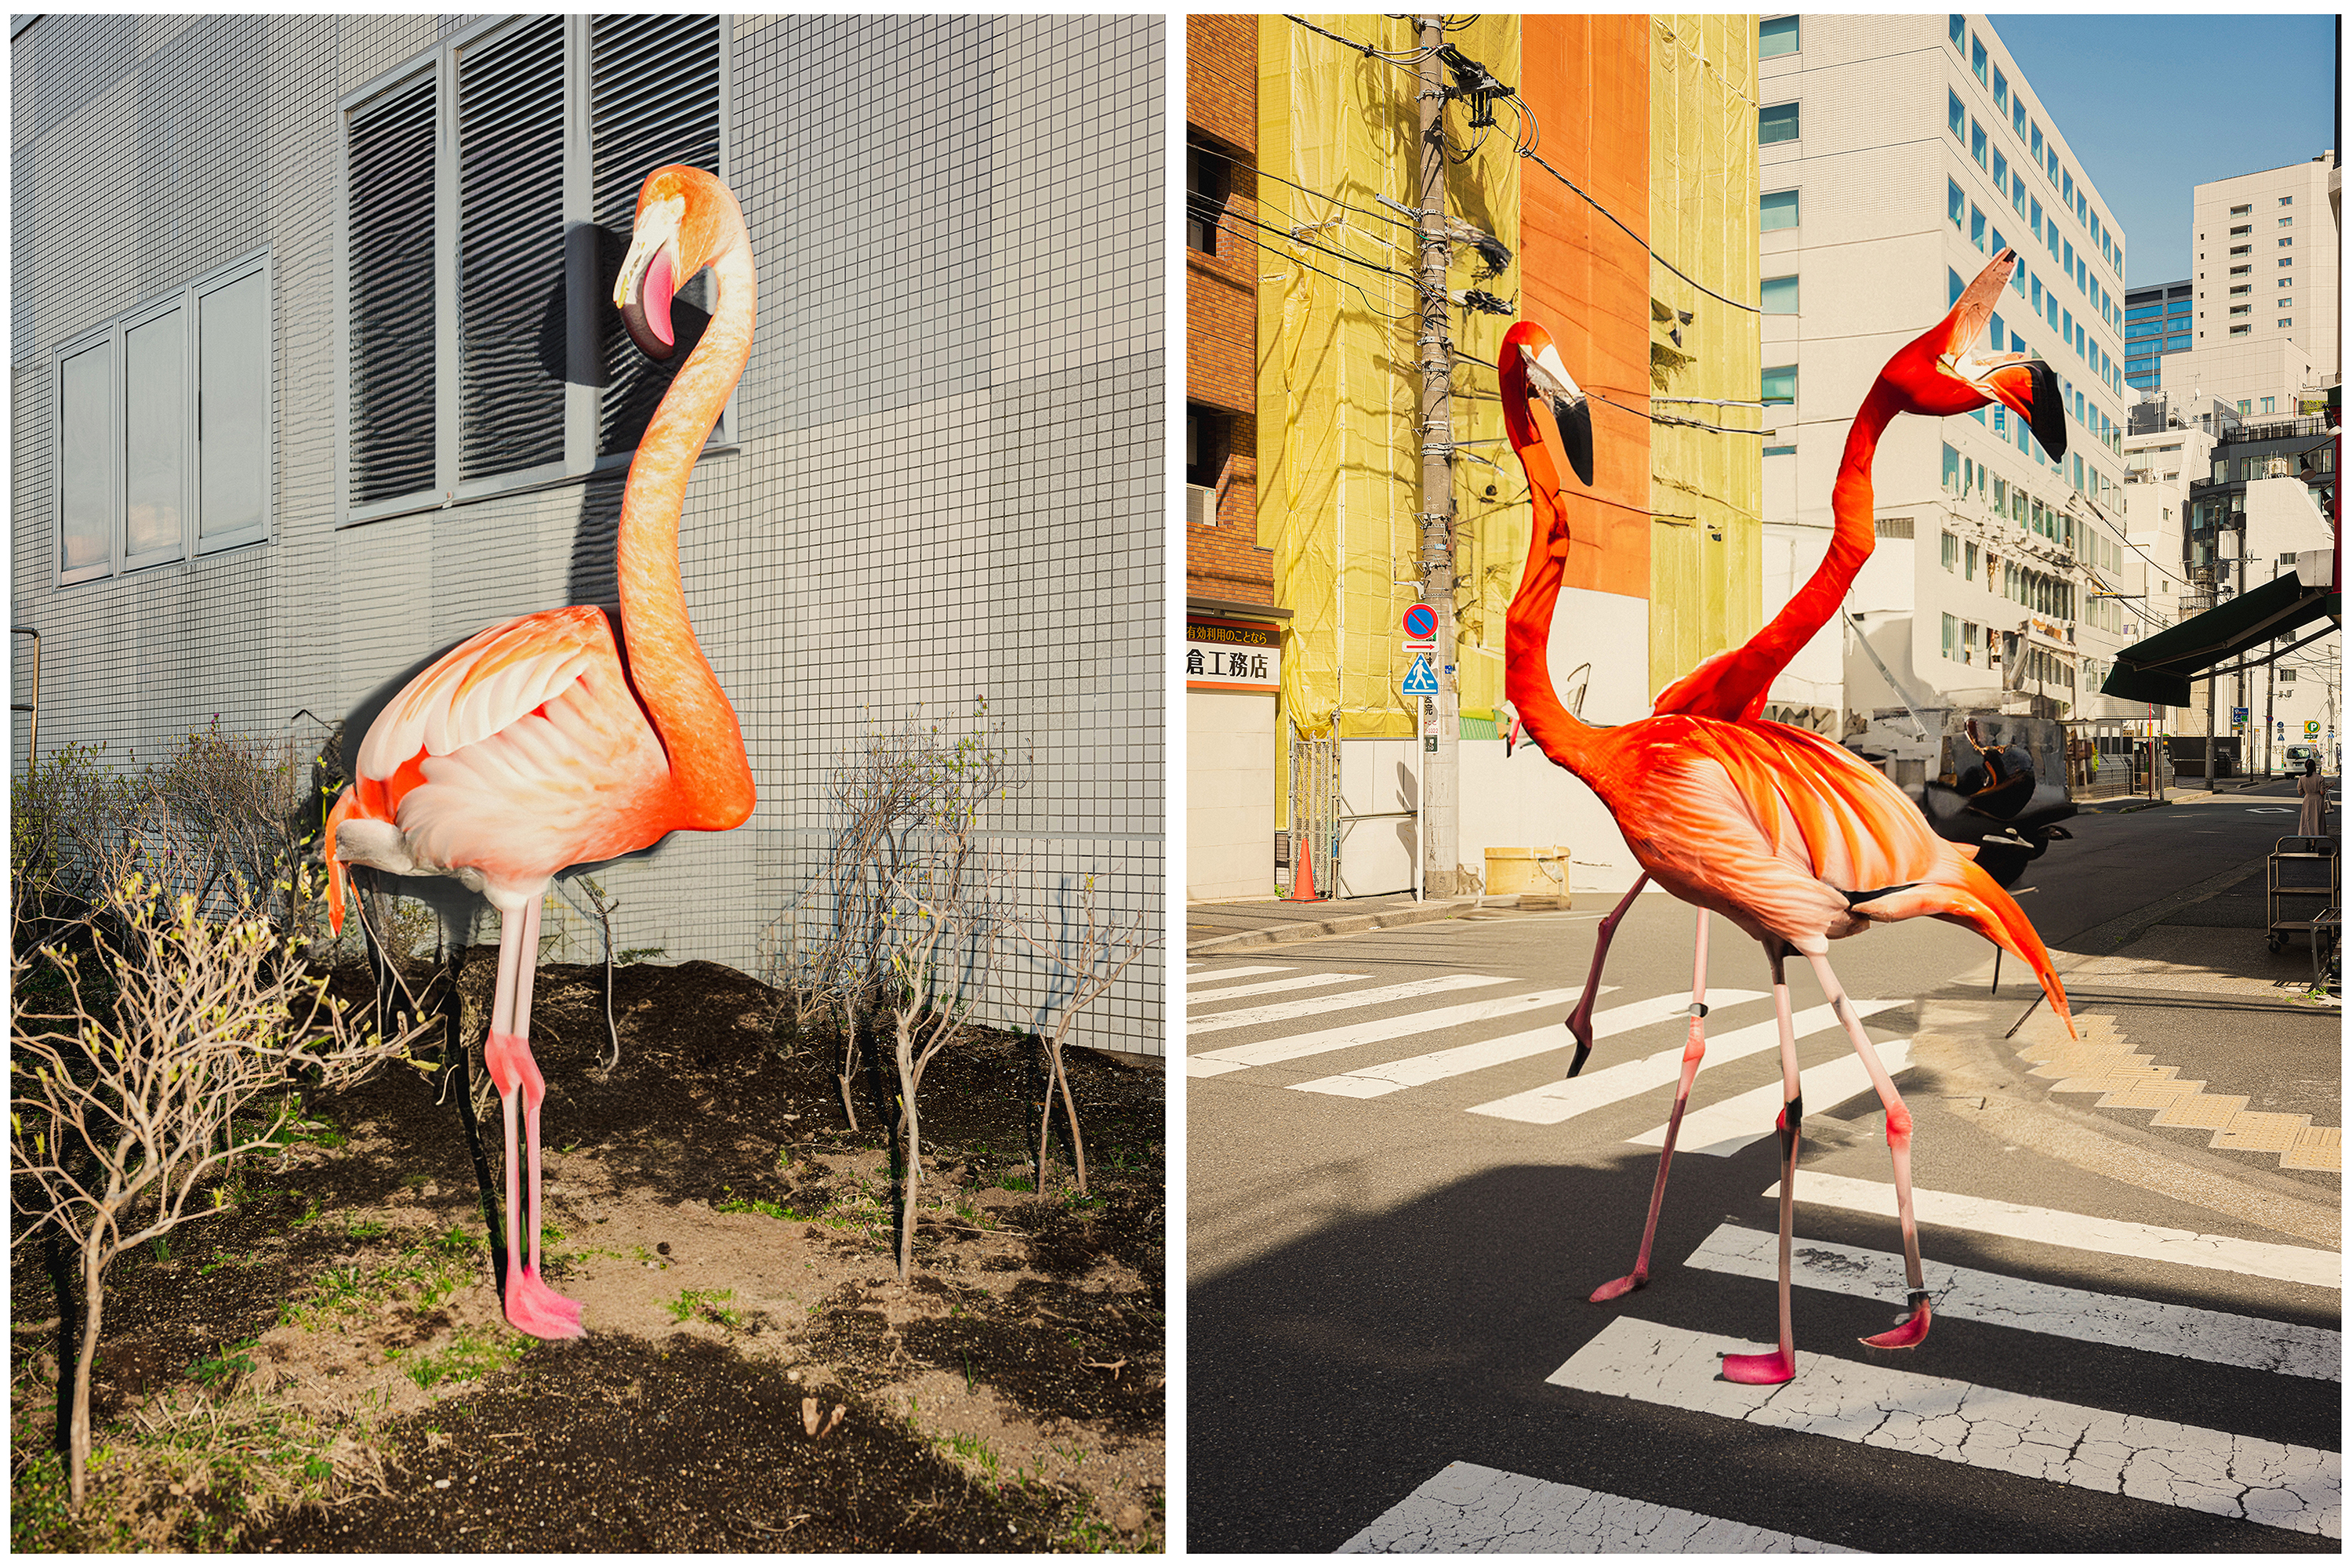 Urban scenes with flamingo super-imposed